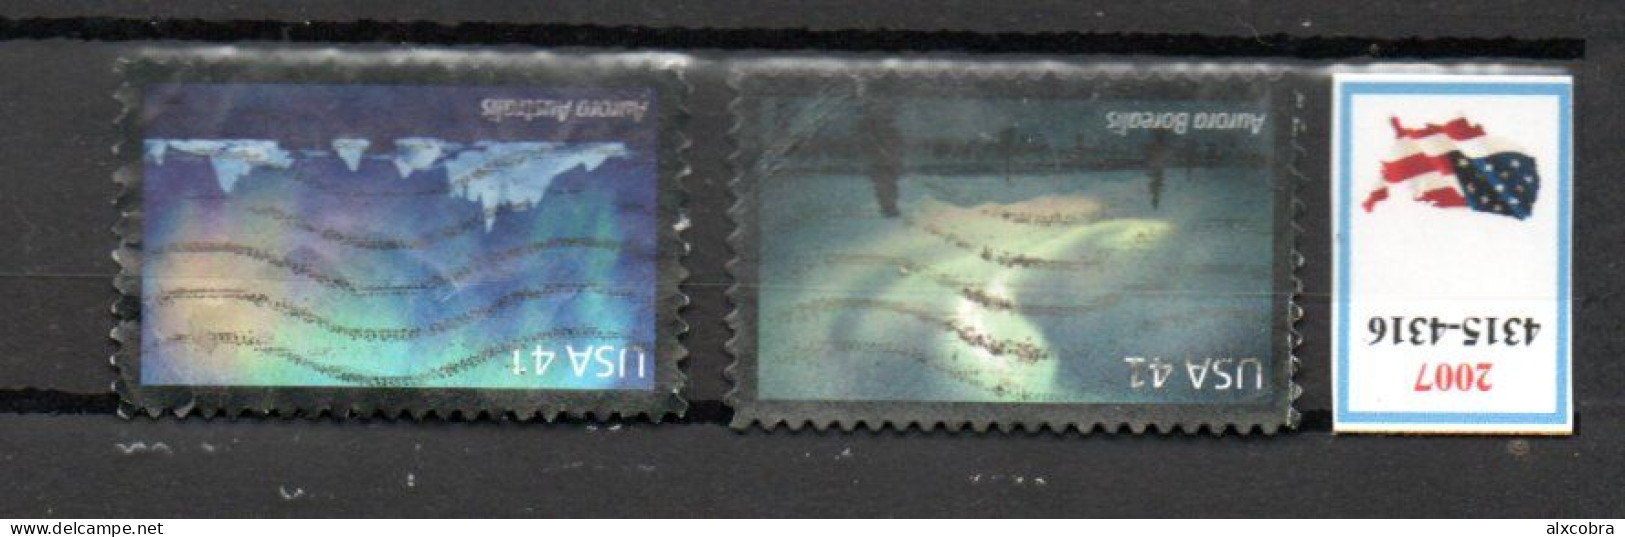 USA United States Aurora Borealis Australis 2007 Mi 4315-4316 USED - Used Stamps